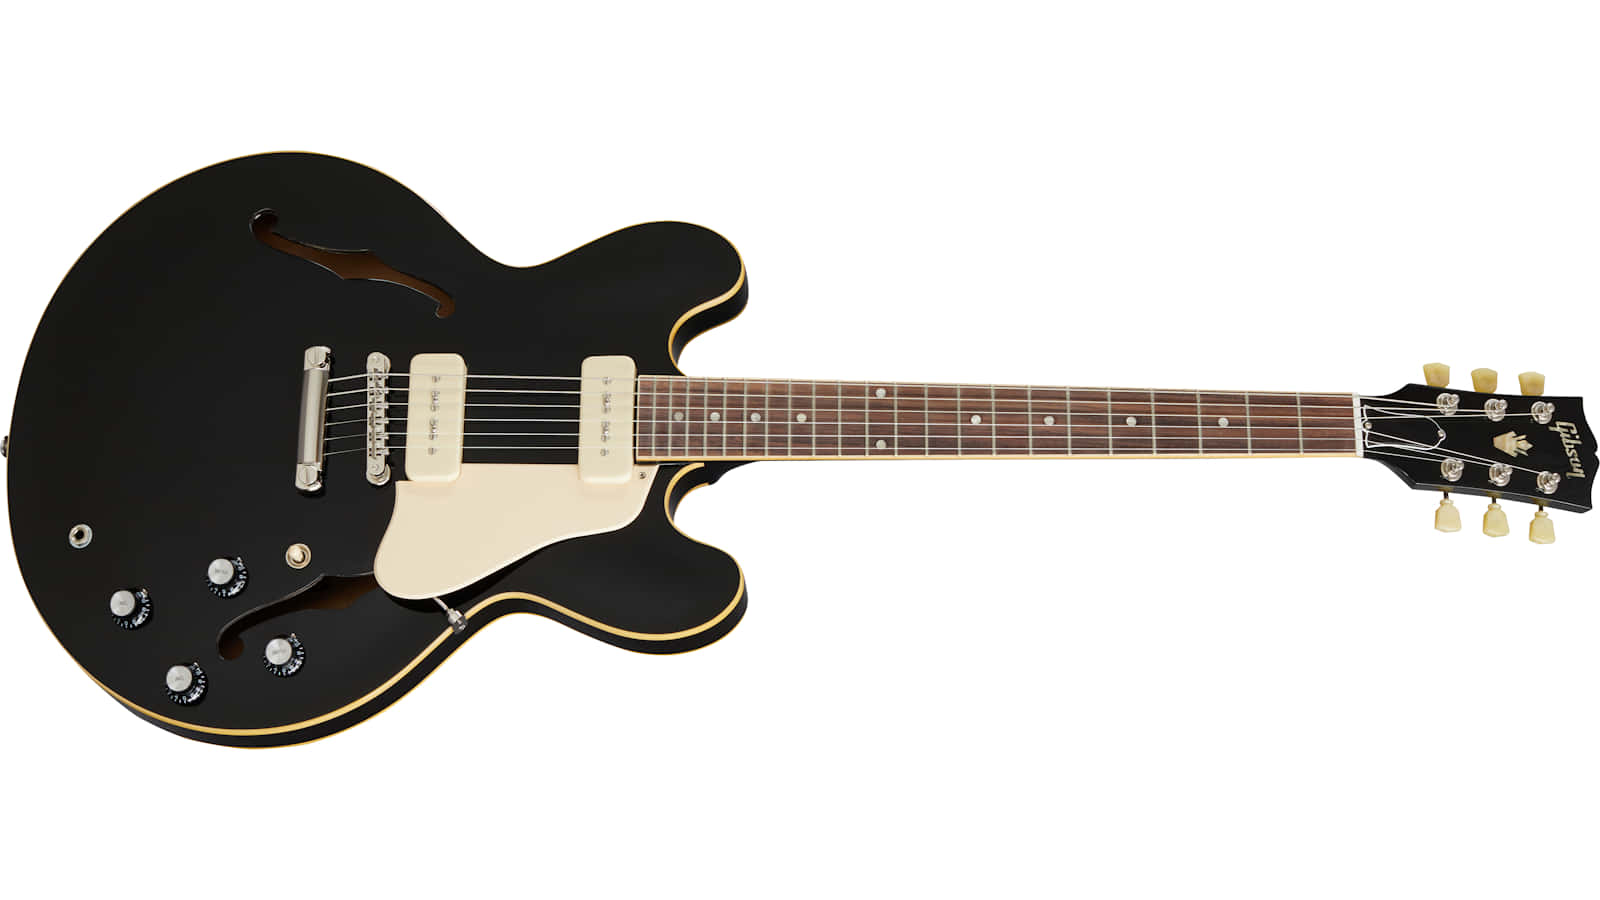 Gibson 335 Wallpaper